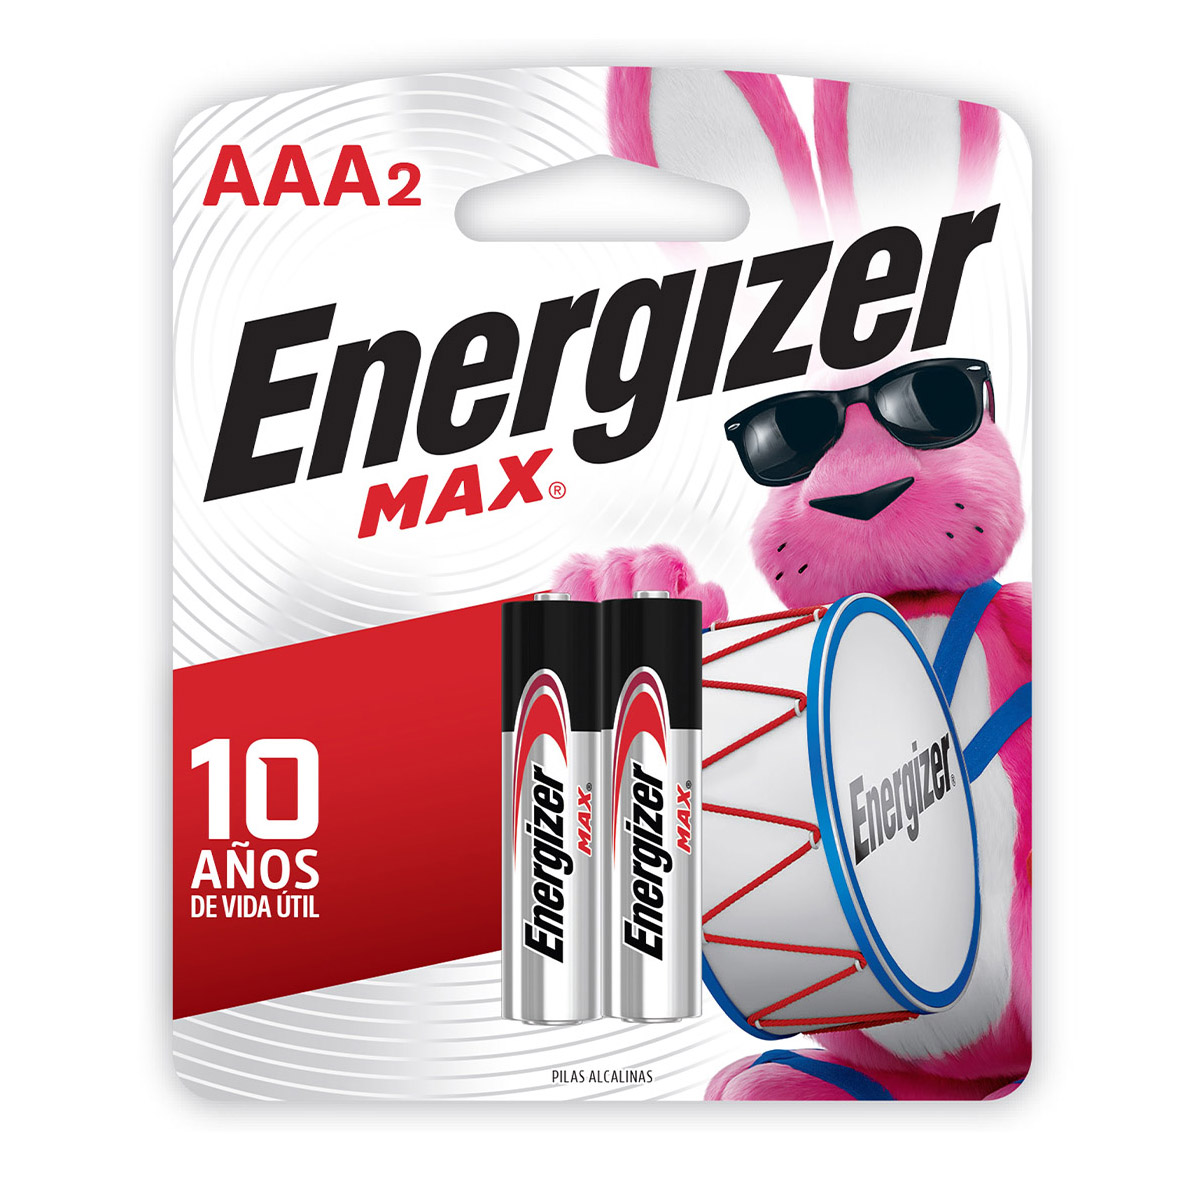 2 x Pilas AAA alcalinas Energizer MAX